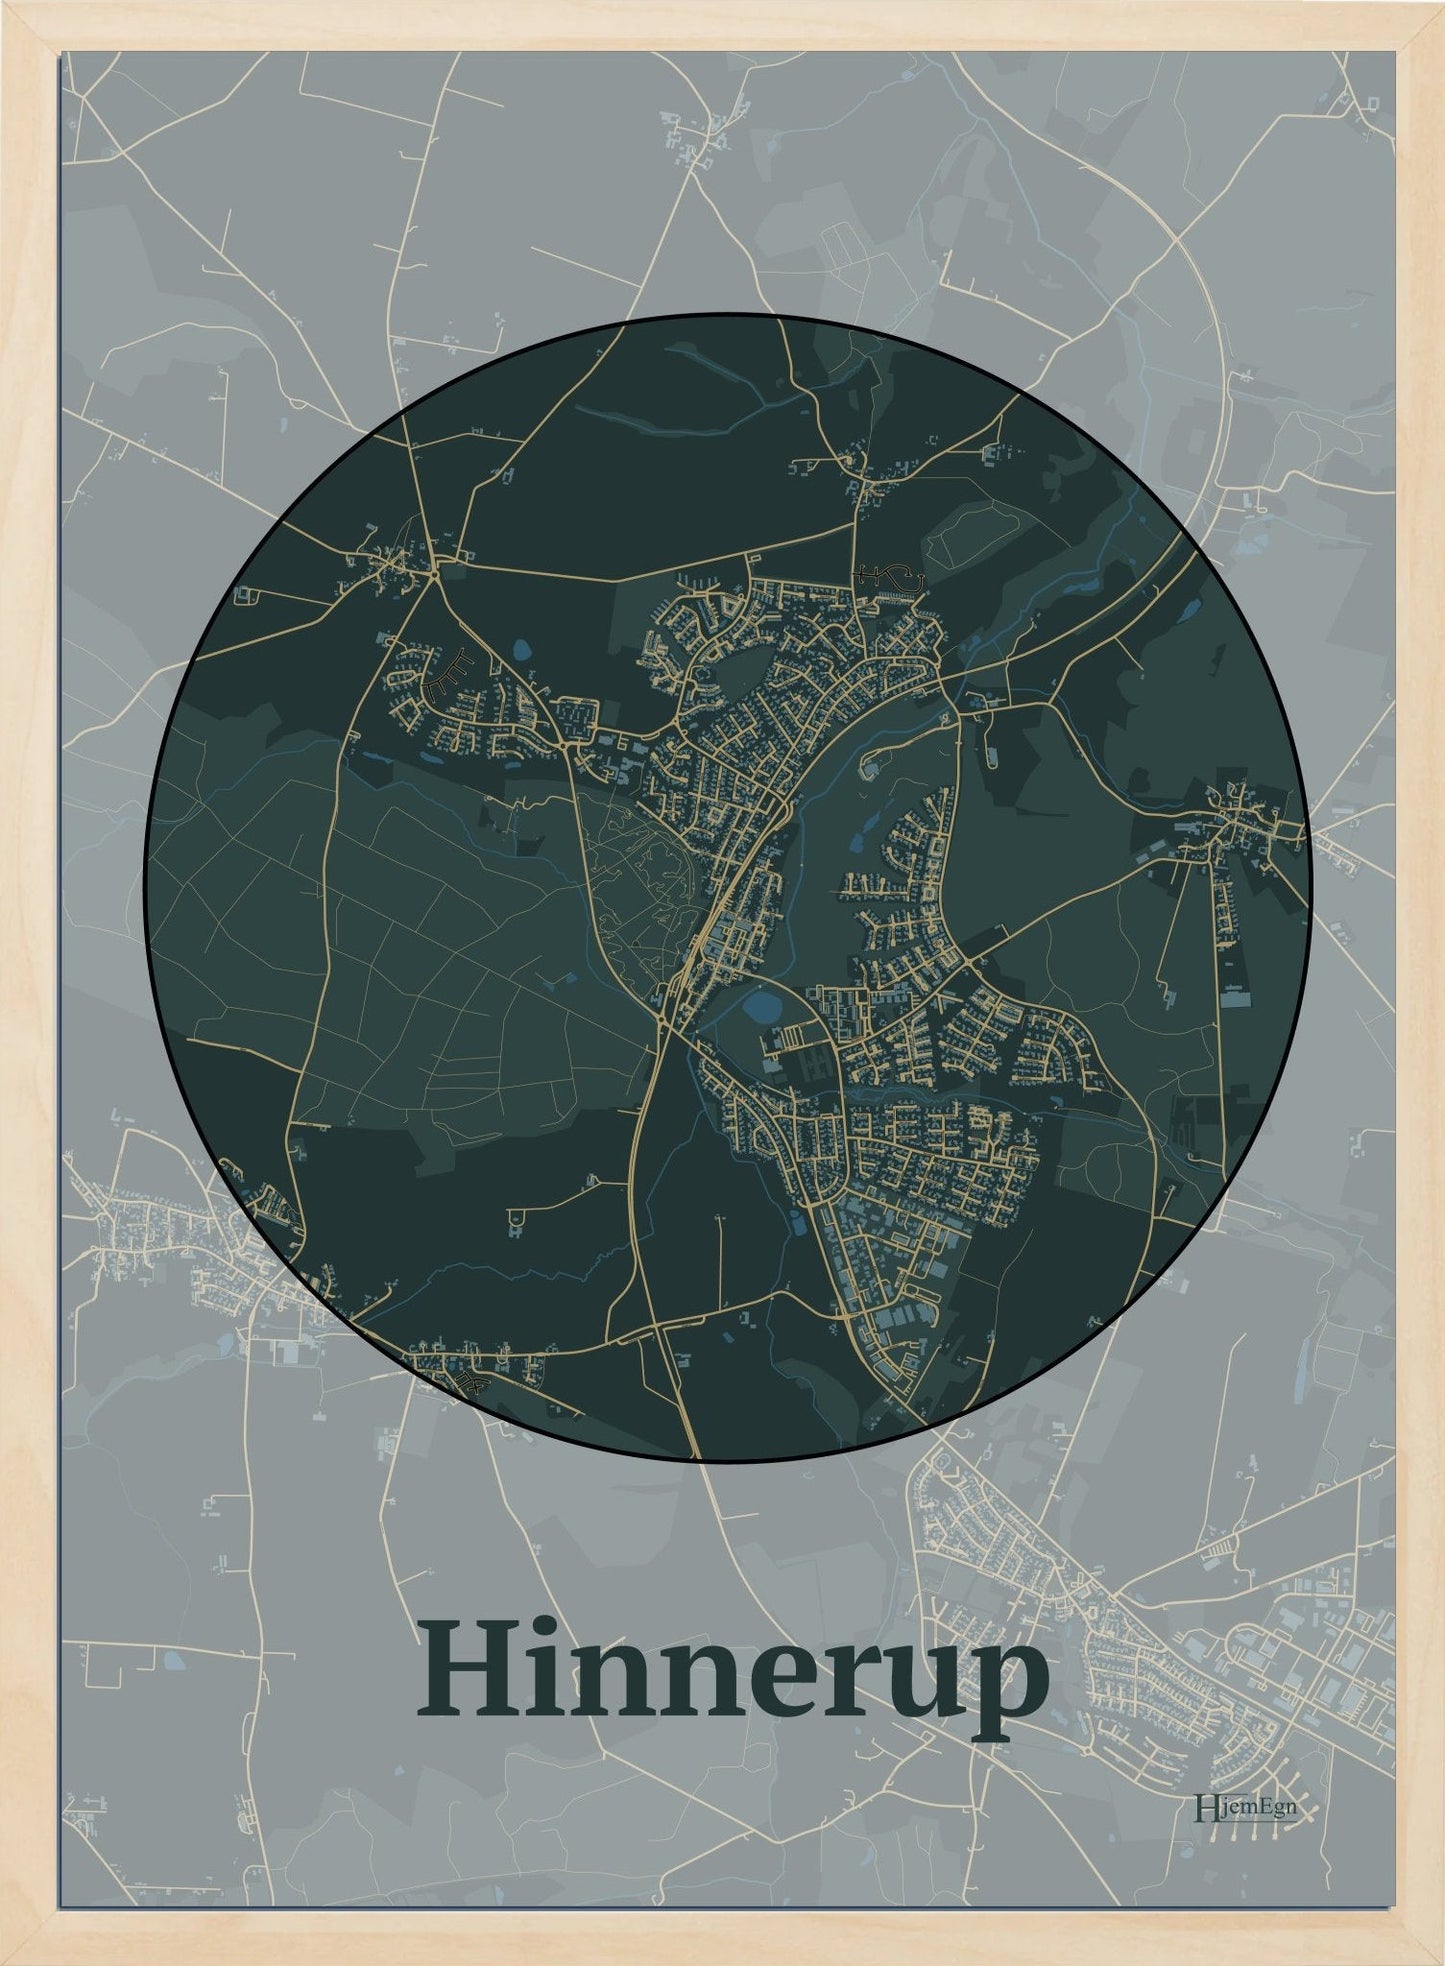 Hinnerup plakat i farve mørk grøn og HjemEgn.dk design centrum. Design bykort for Hinnerup